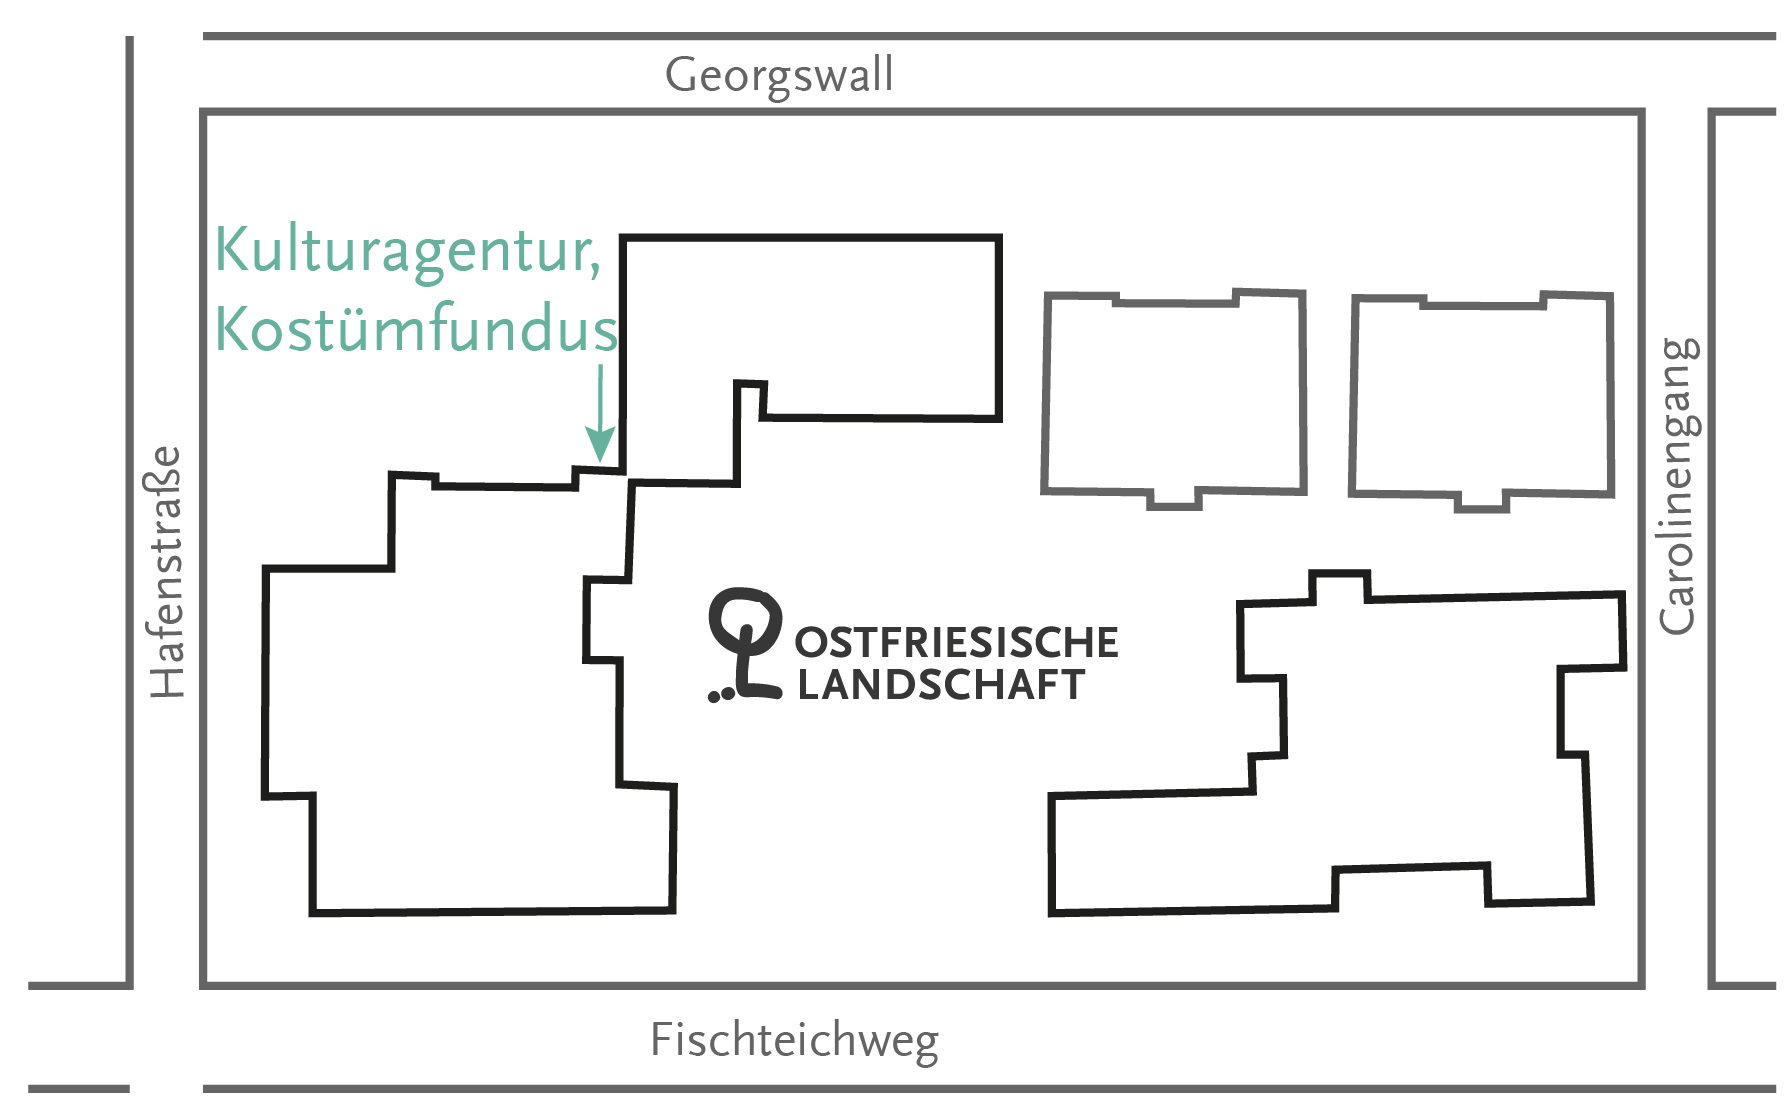 Lageplan der Ostfriesischen Landschaft mit Eingang der Kulturagentur